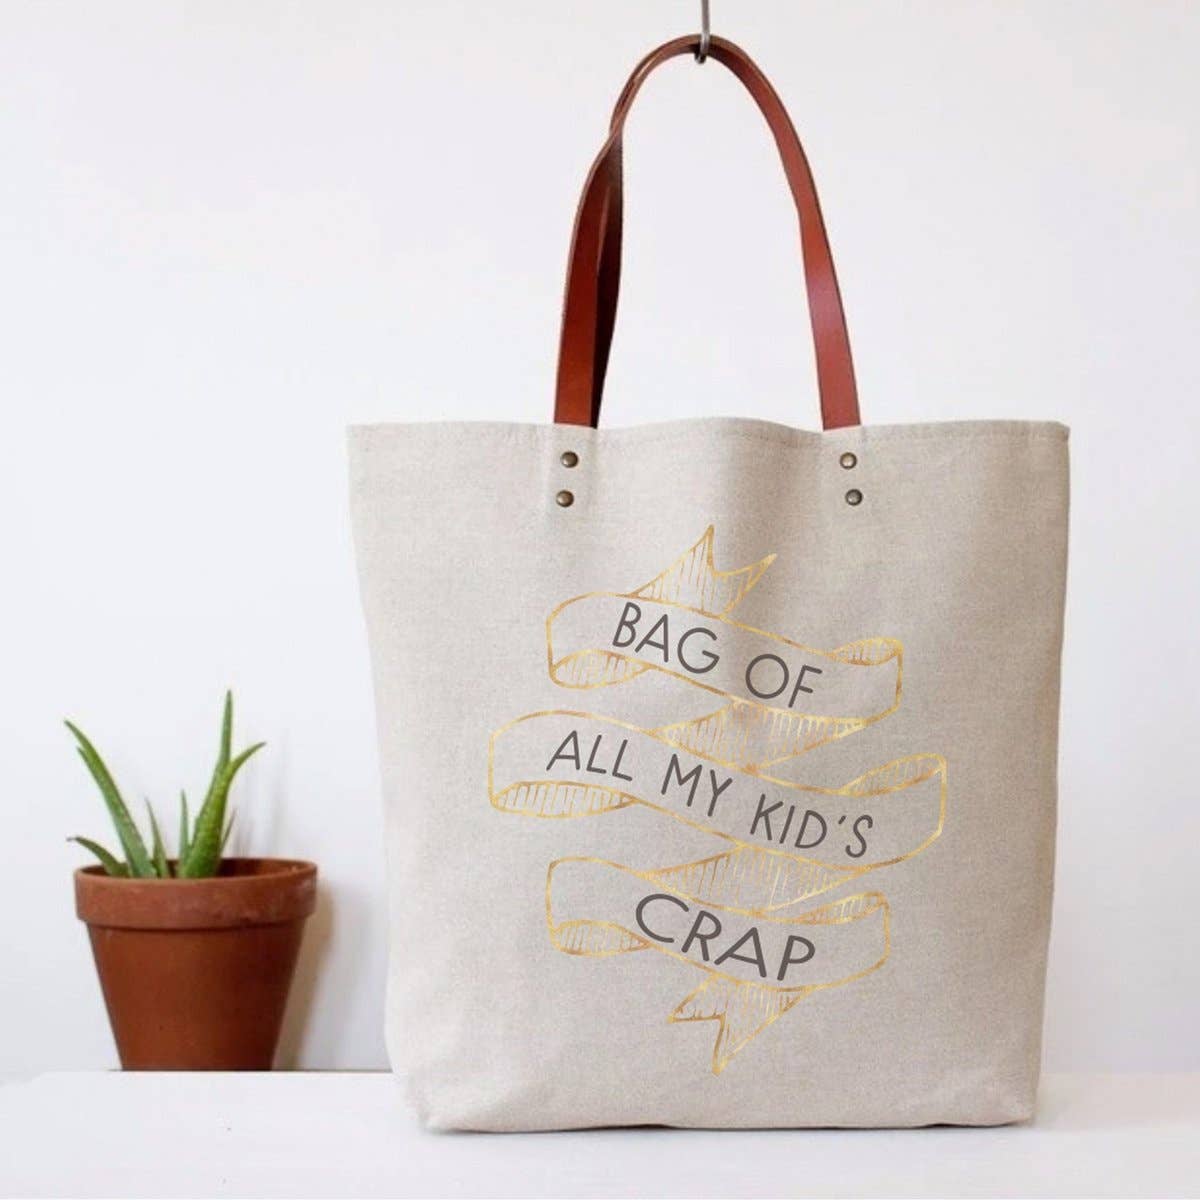 Kid's Crap Tote Bag - Rose Grace Boutique 